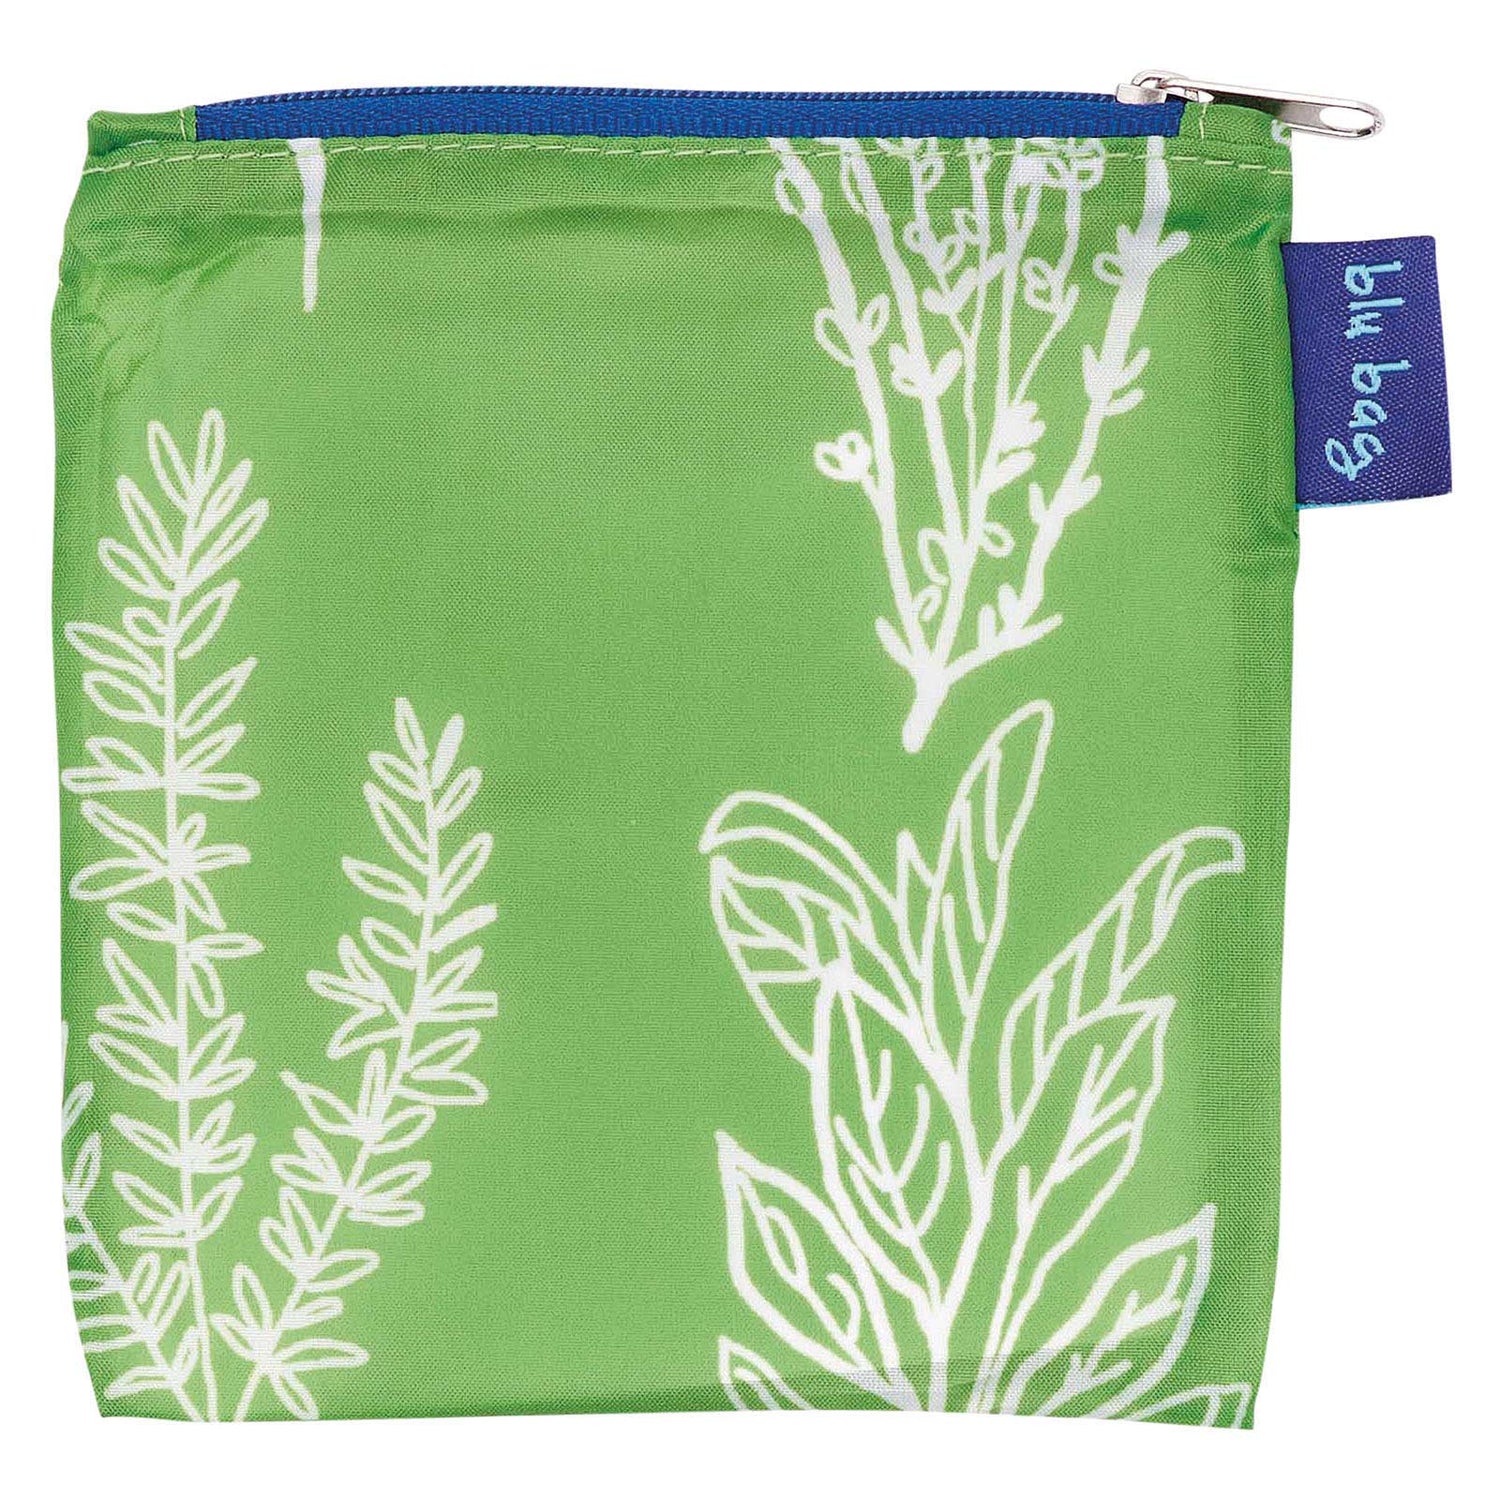 Herbs Green Blu Bag Reusable Shopping Bag - Machine Washable Reusable Shopping Bag - rockflowerpaper